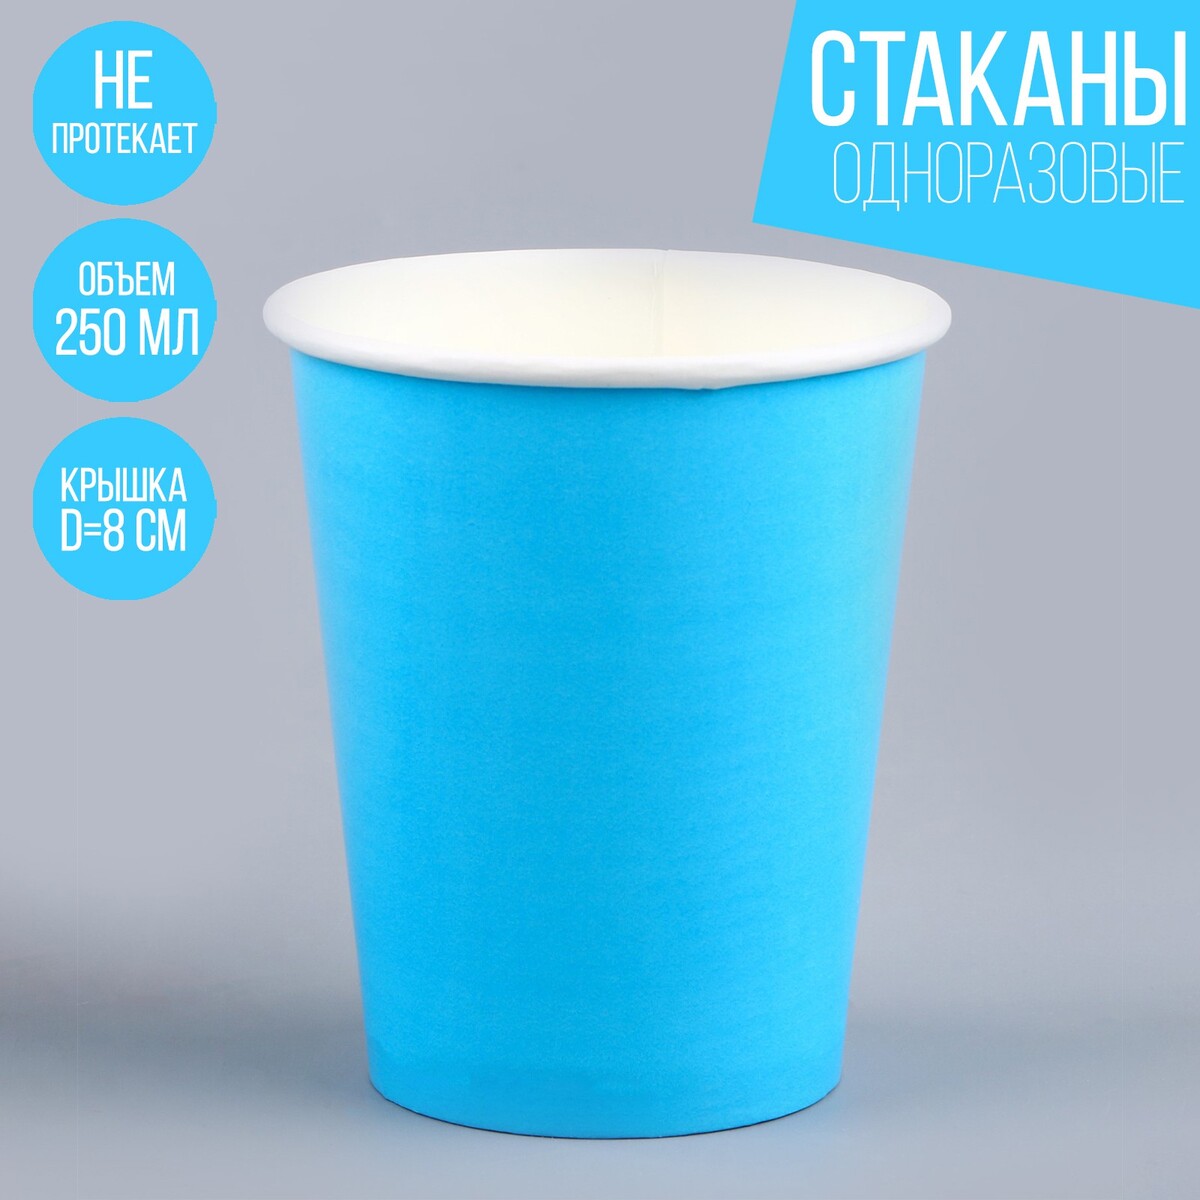 Стакан одноразовый бумажный однотонный, цвет голубой, объем 250 мл, набор 10 штук стакан для ванной 8х12 см голубой gl0170a tb